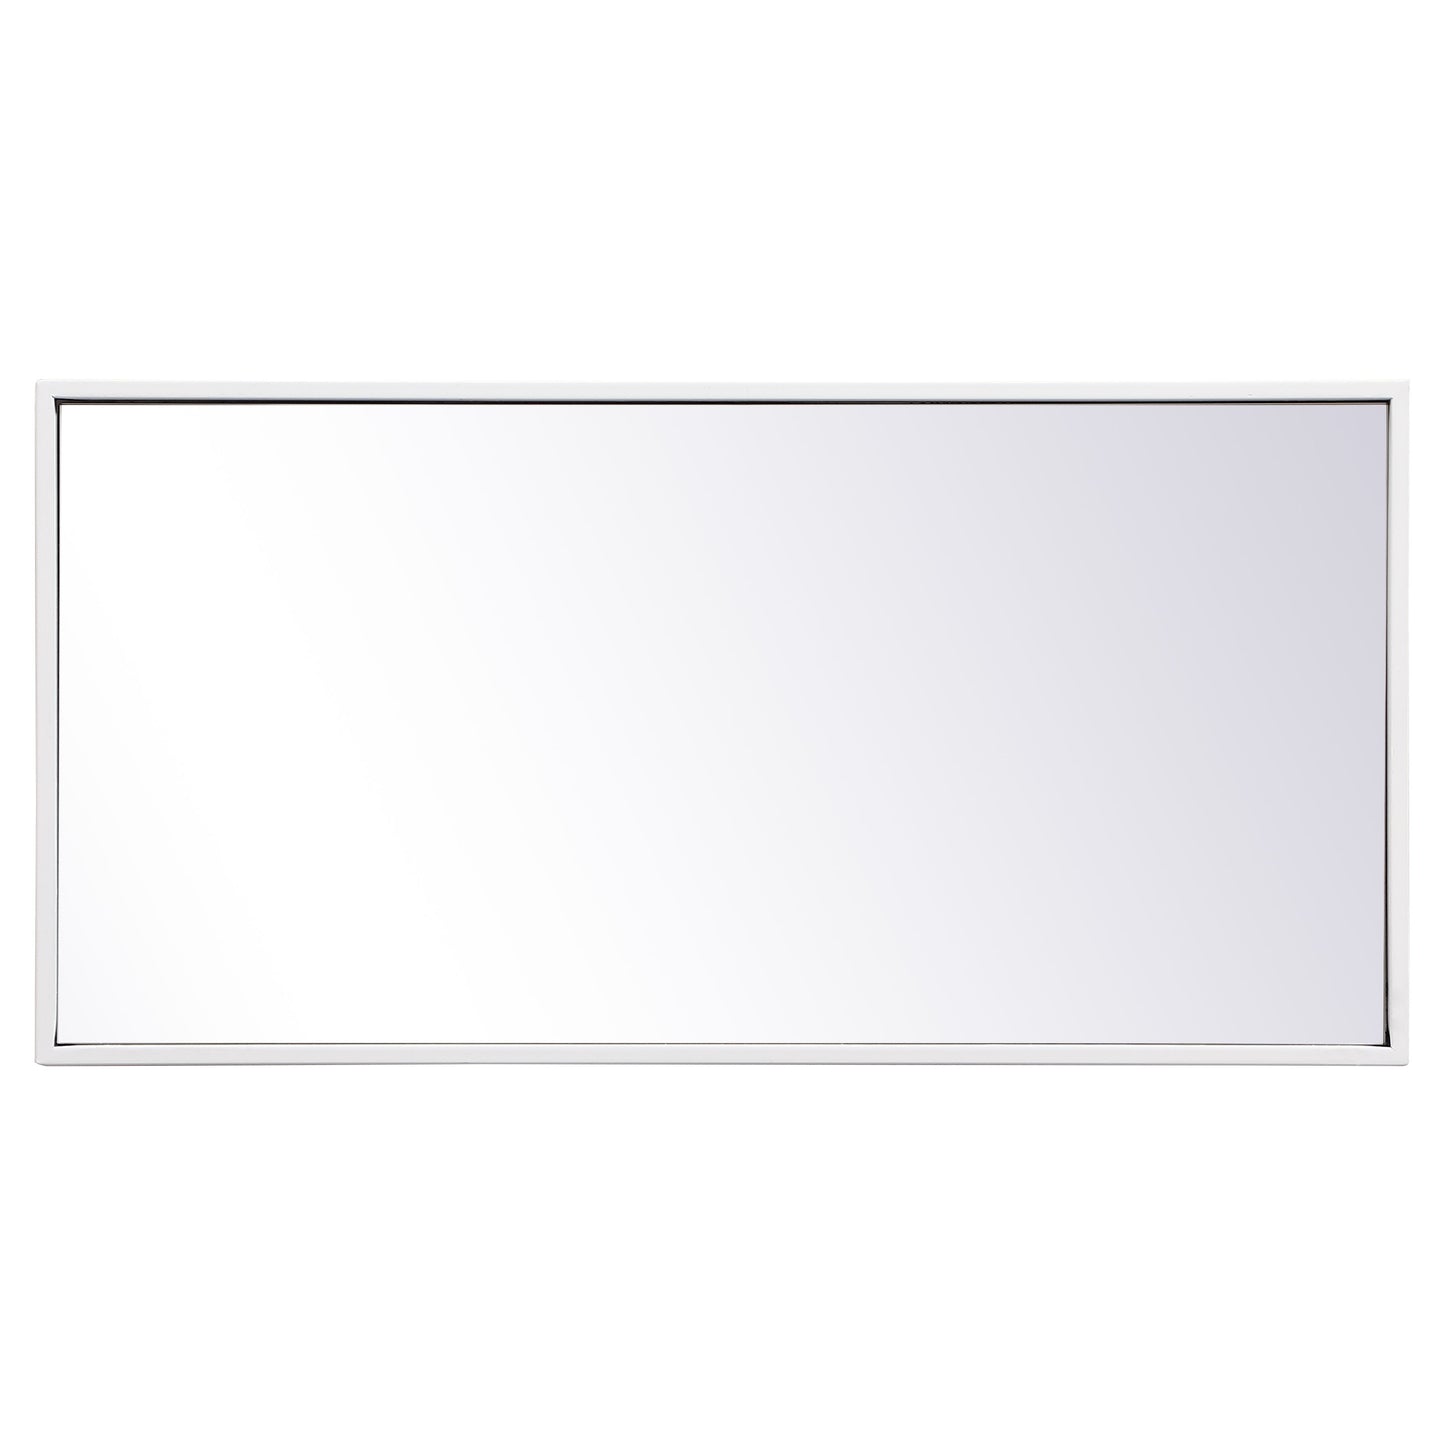 MR41428WH Monet 28" x 14" Metal Framed Rectangular Mirror in White